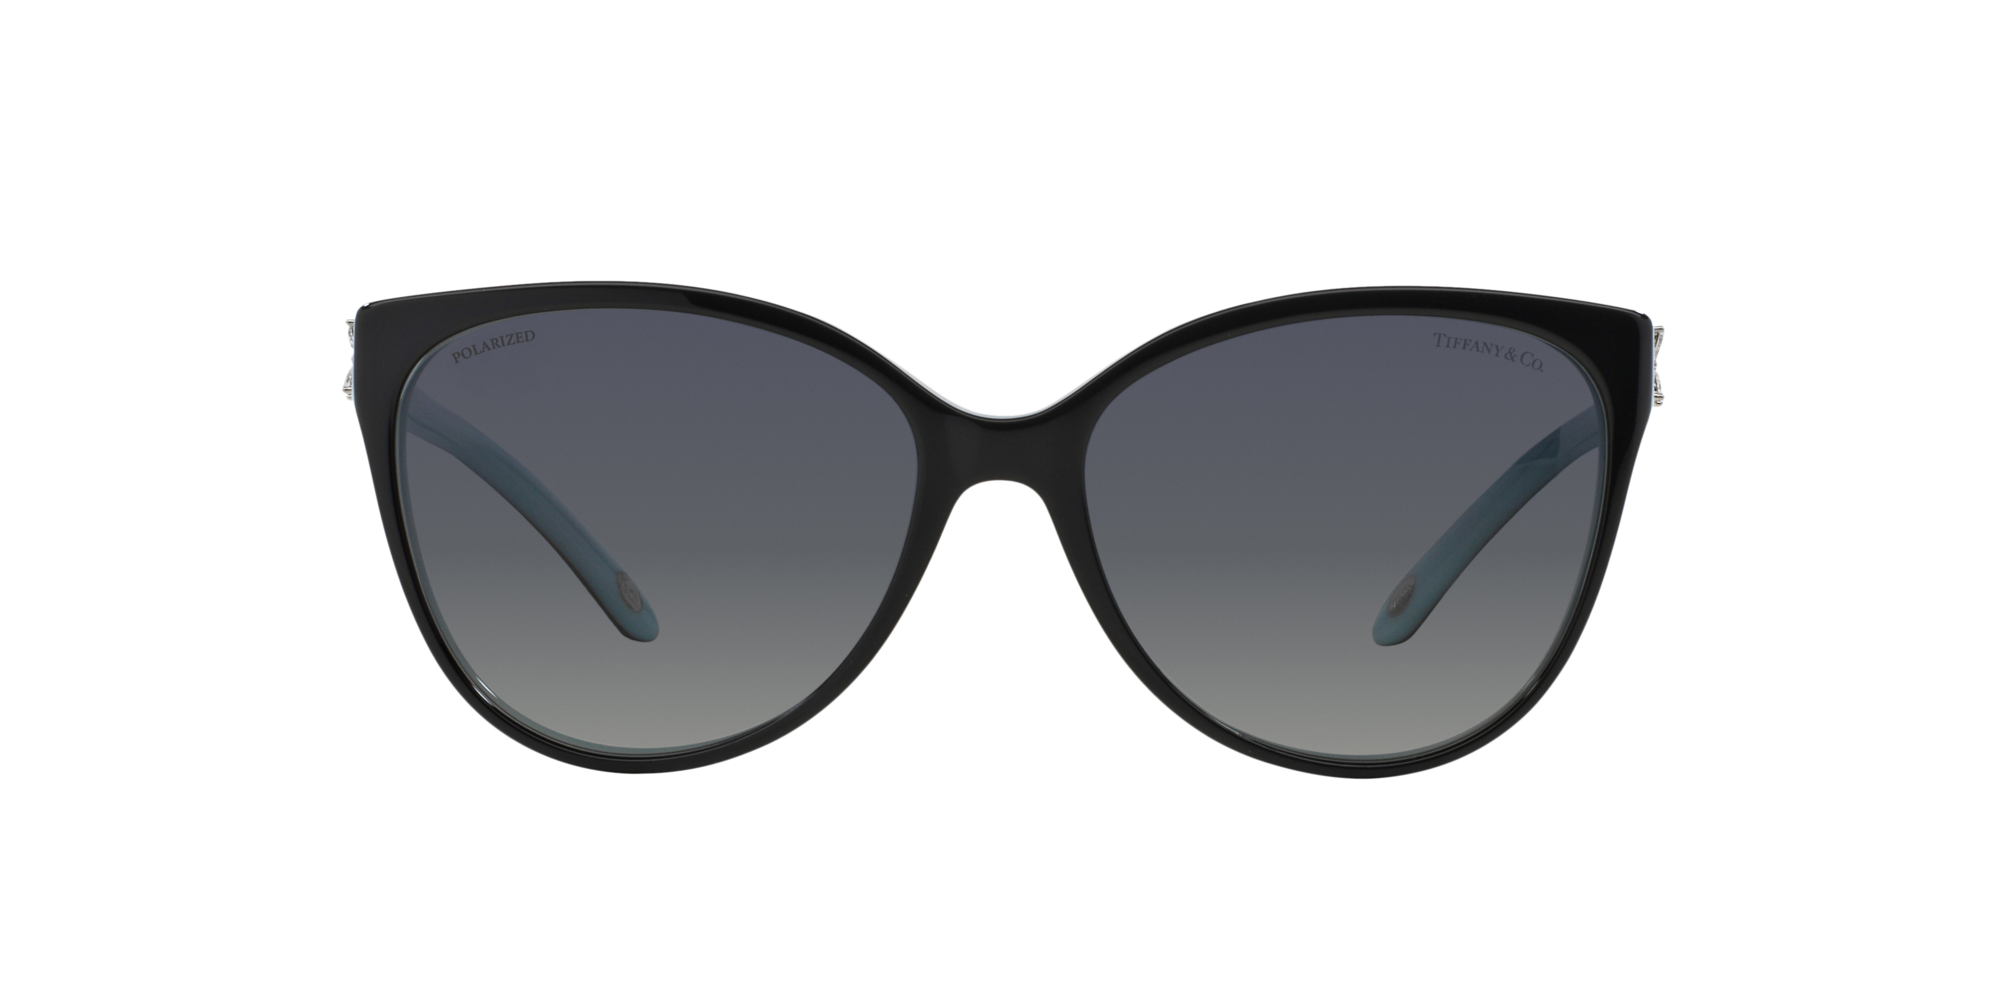 tiffany polarized sunglasses